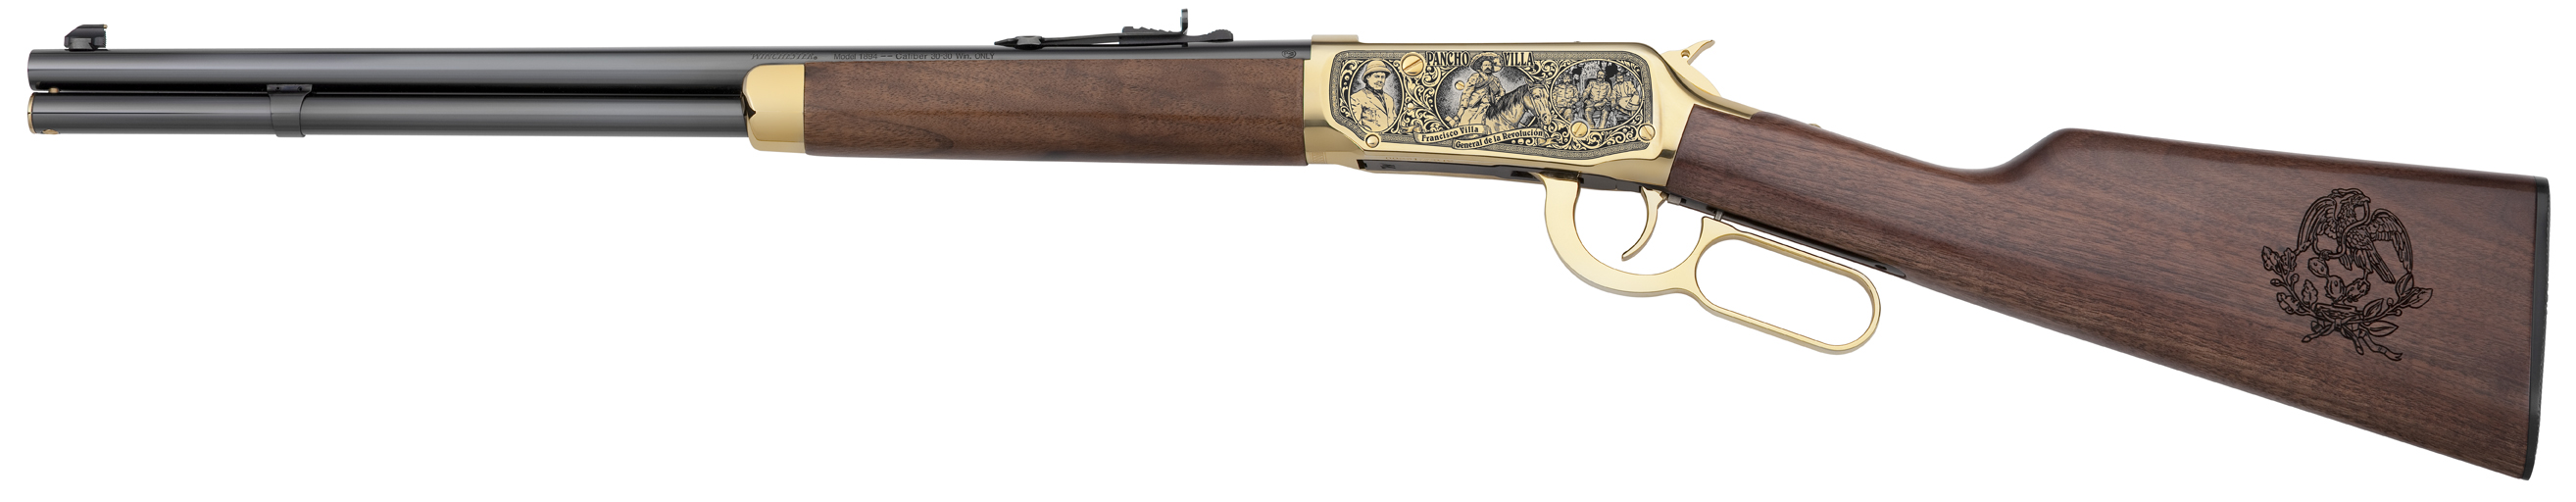 Winchester Rifle HD wallpapers, Desktop wallpaper - most viewed